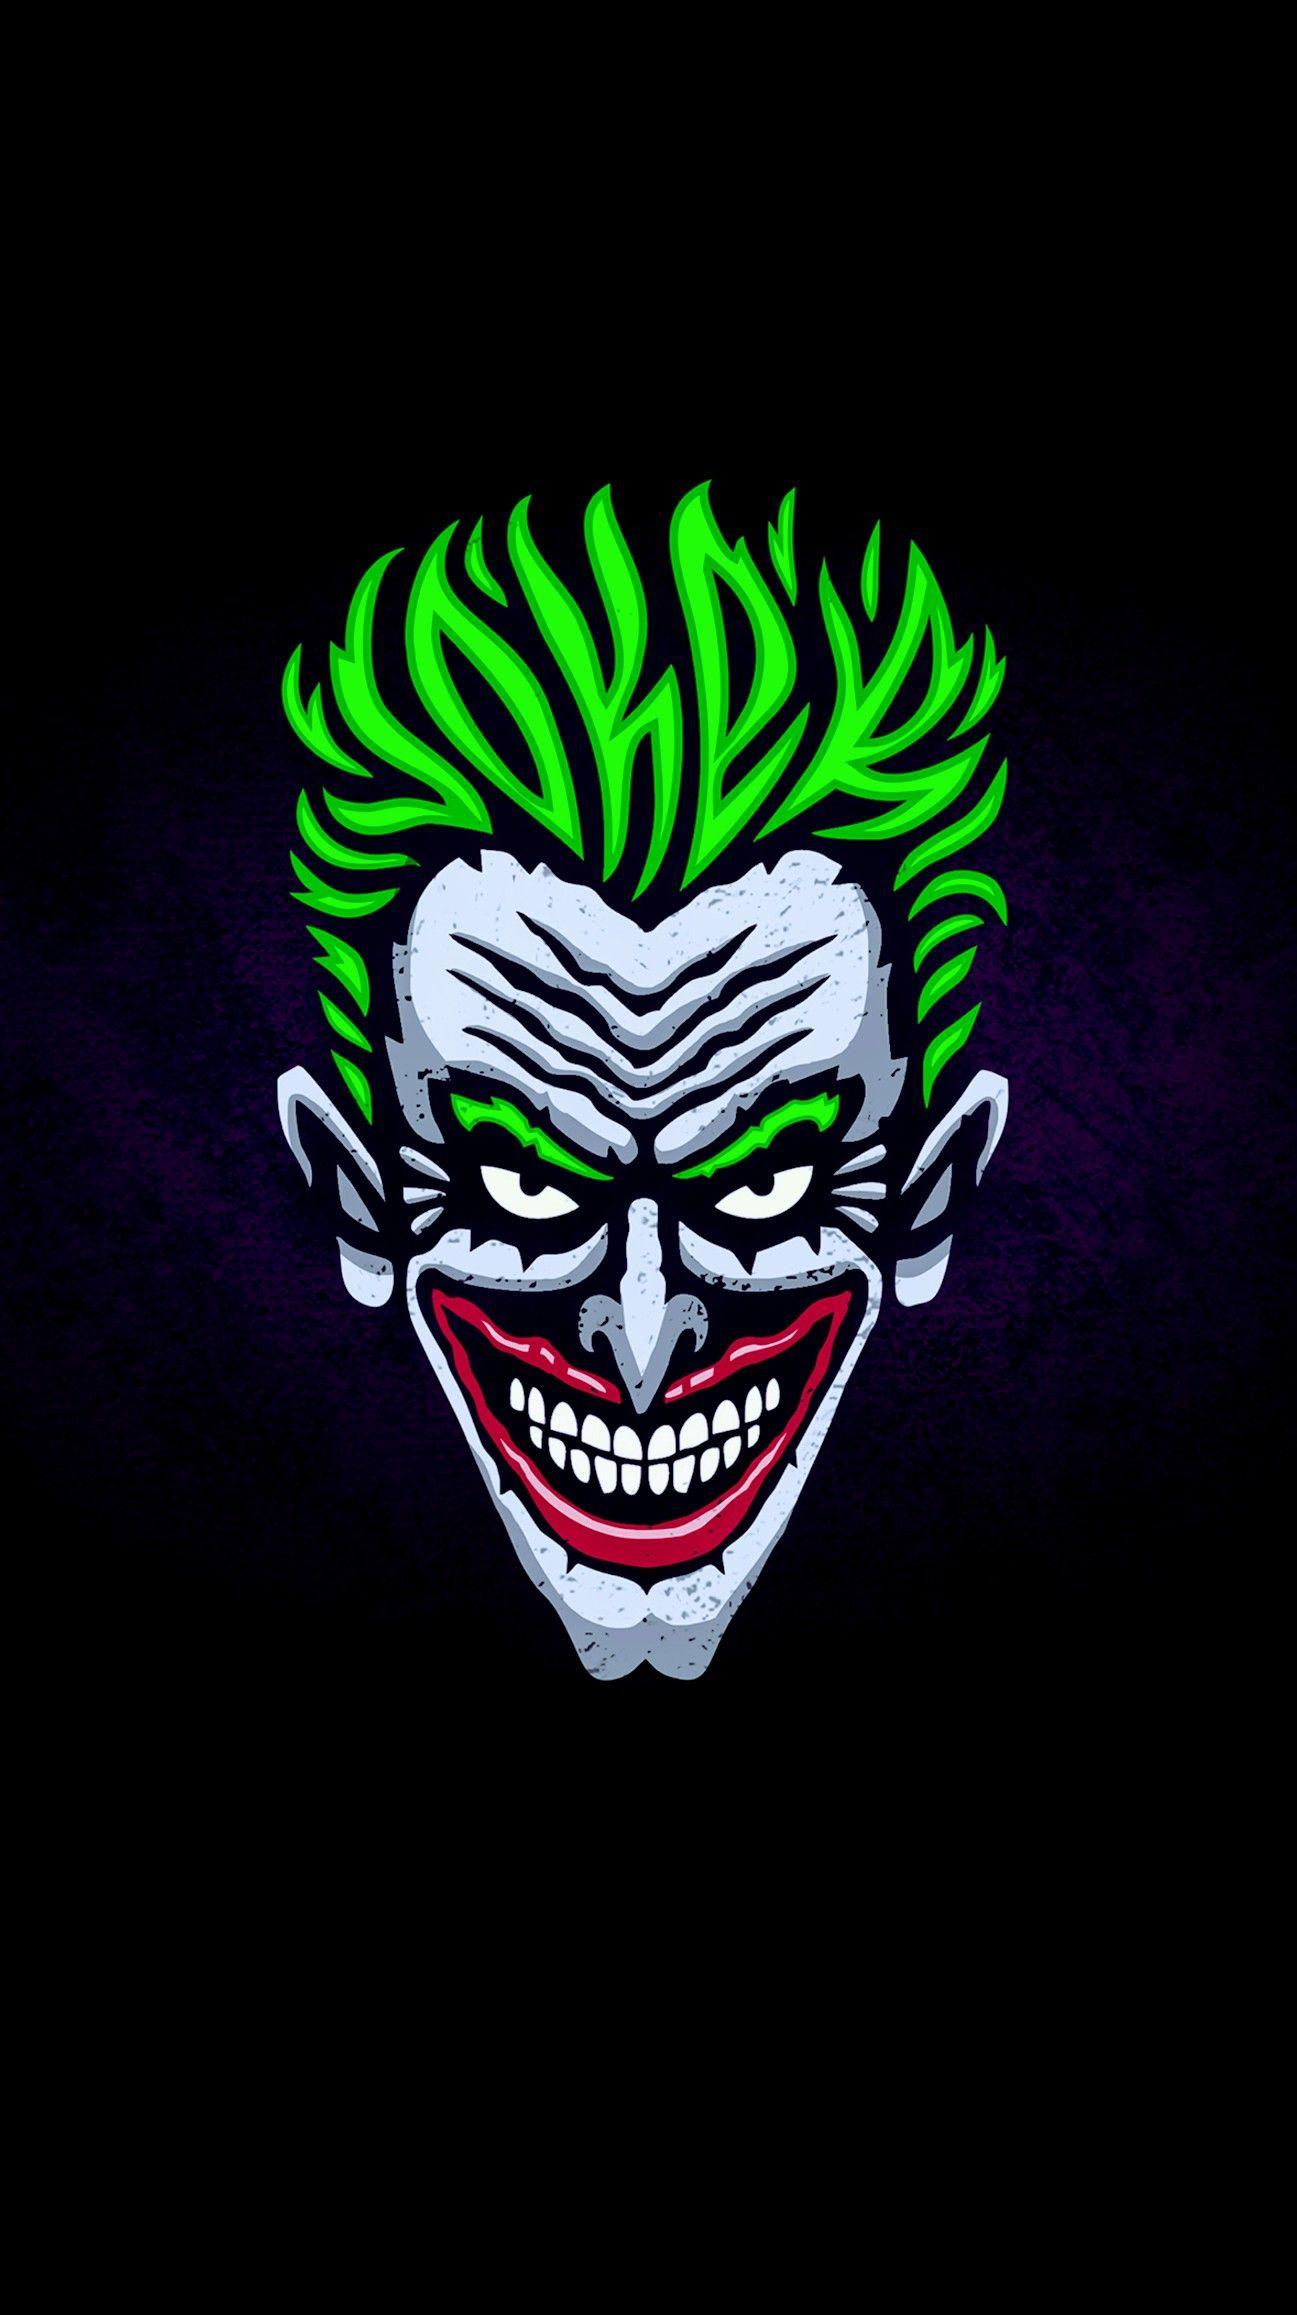 The Joker. Joker wallpaper, Joker image, Joker art